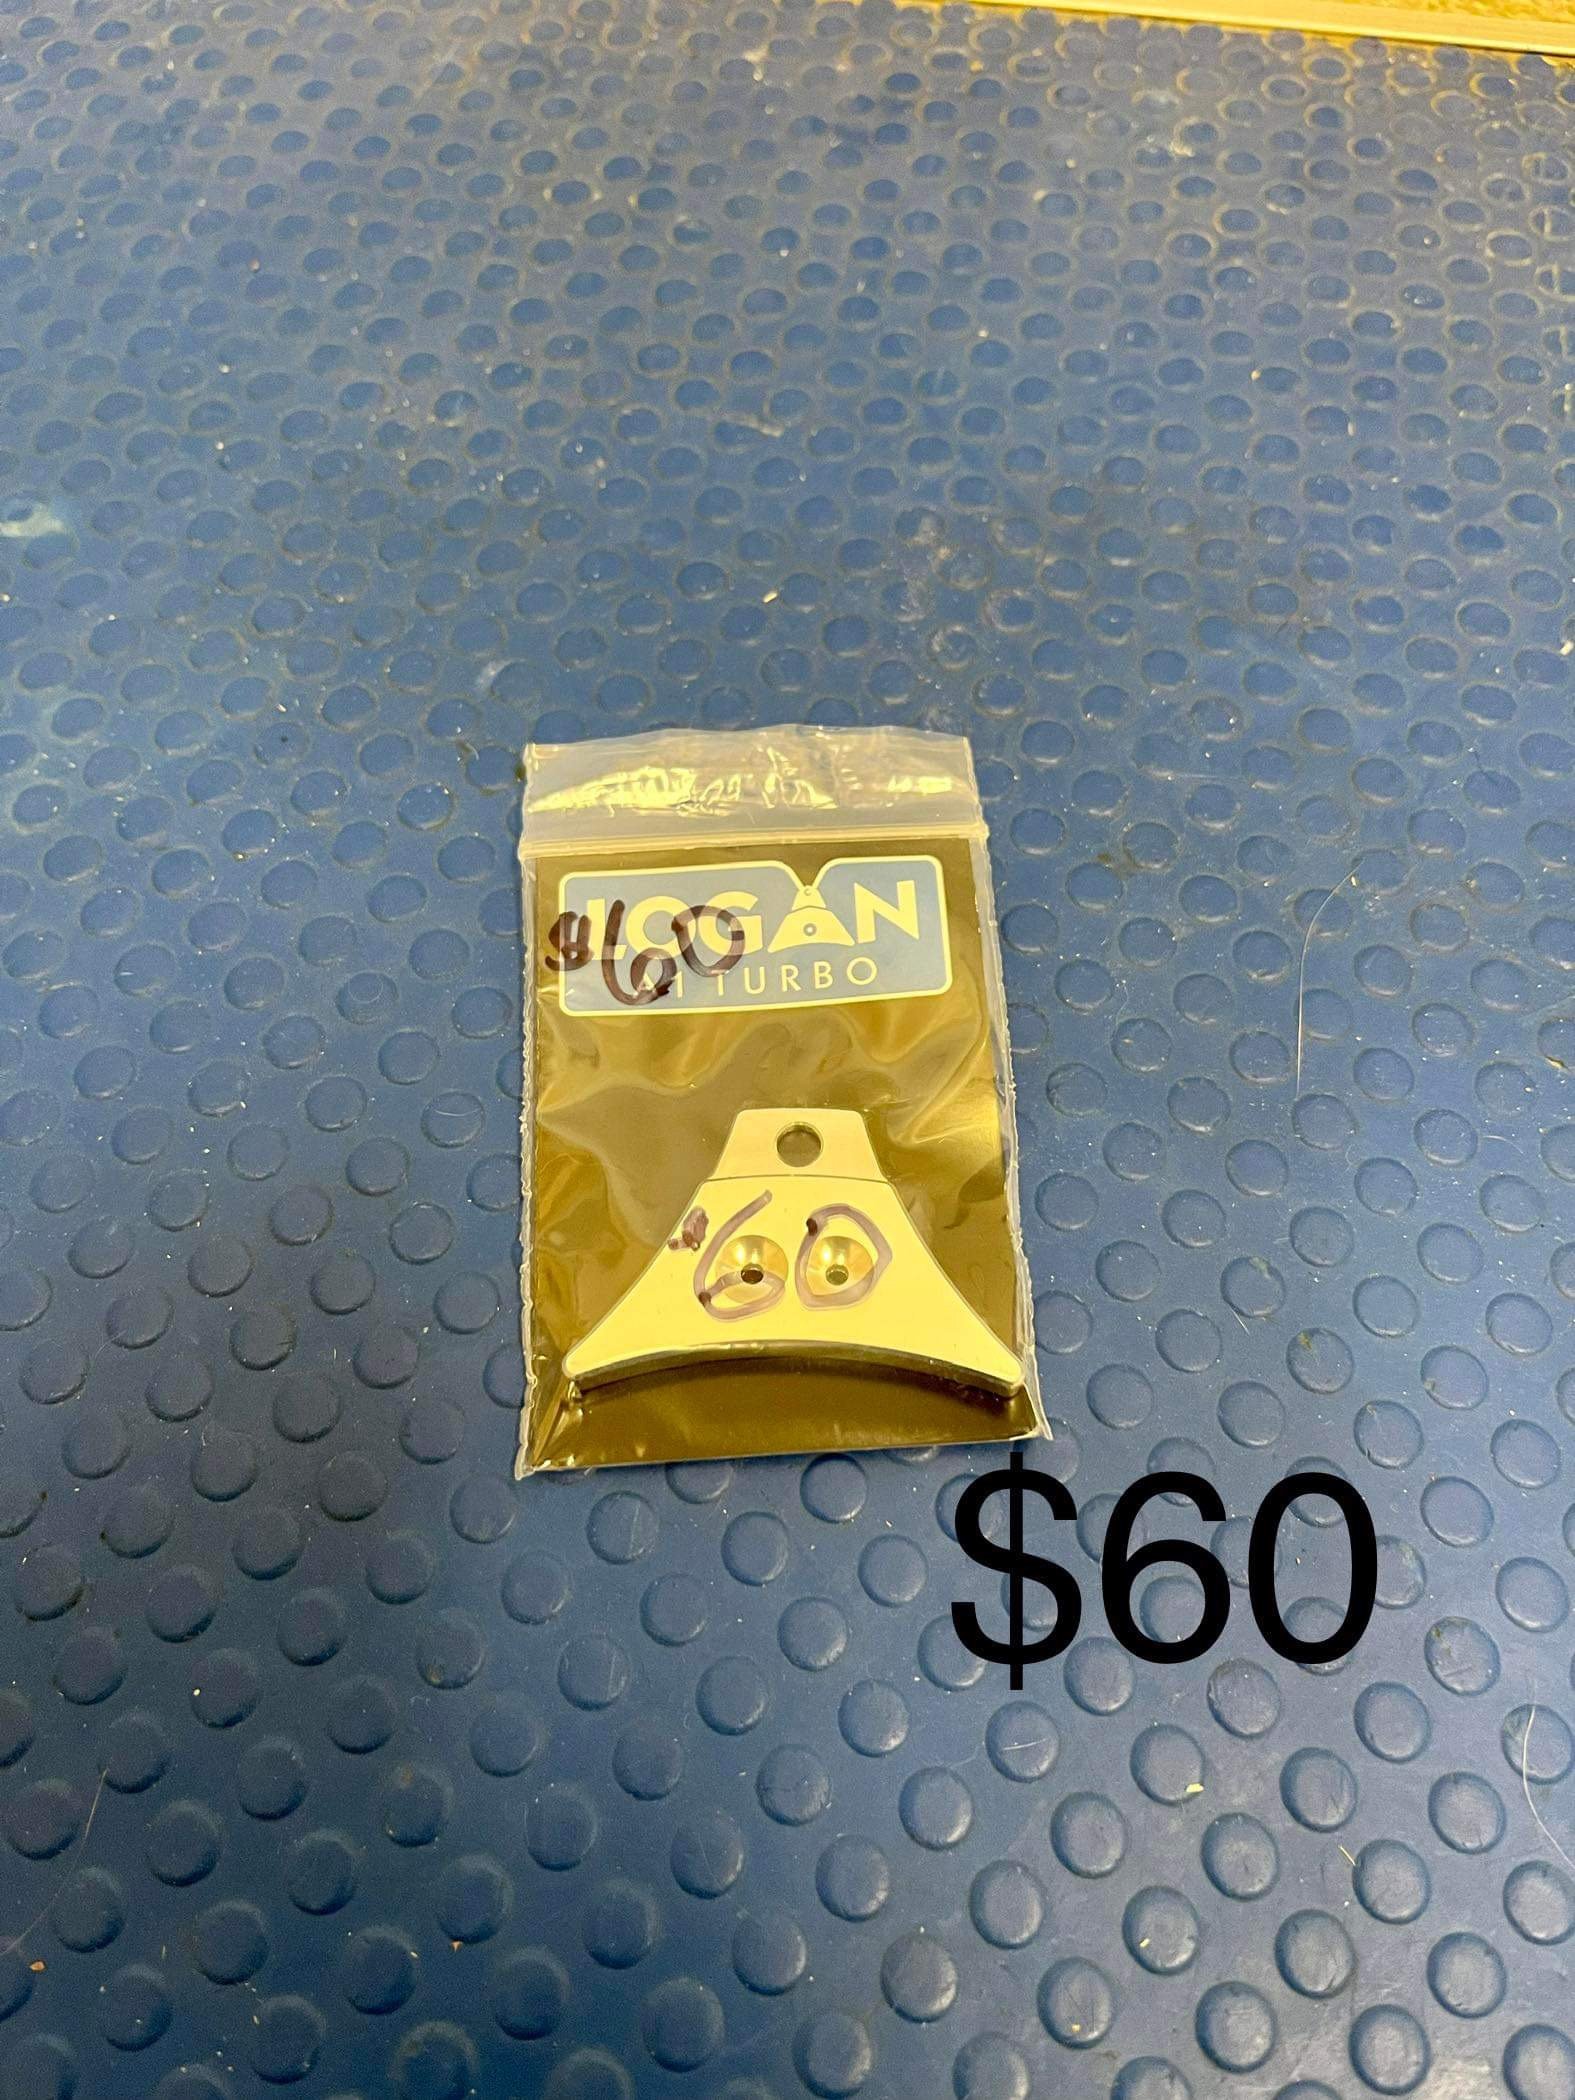 $60.00 Logan A1 Turbo Whistle